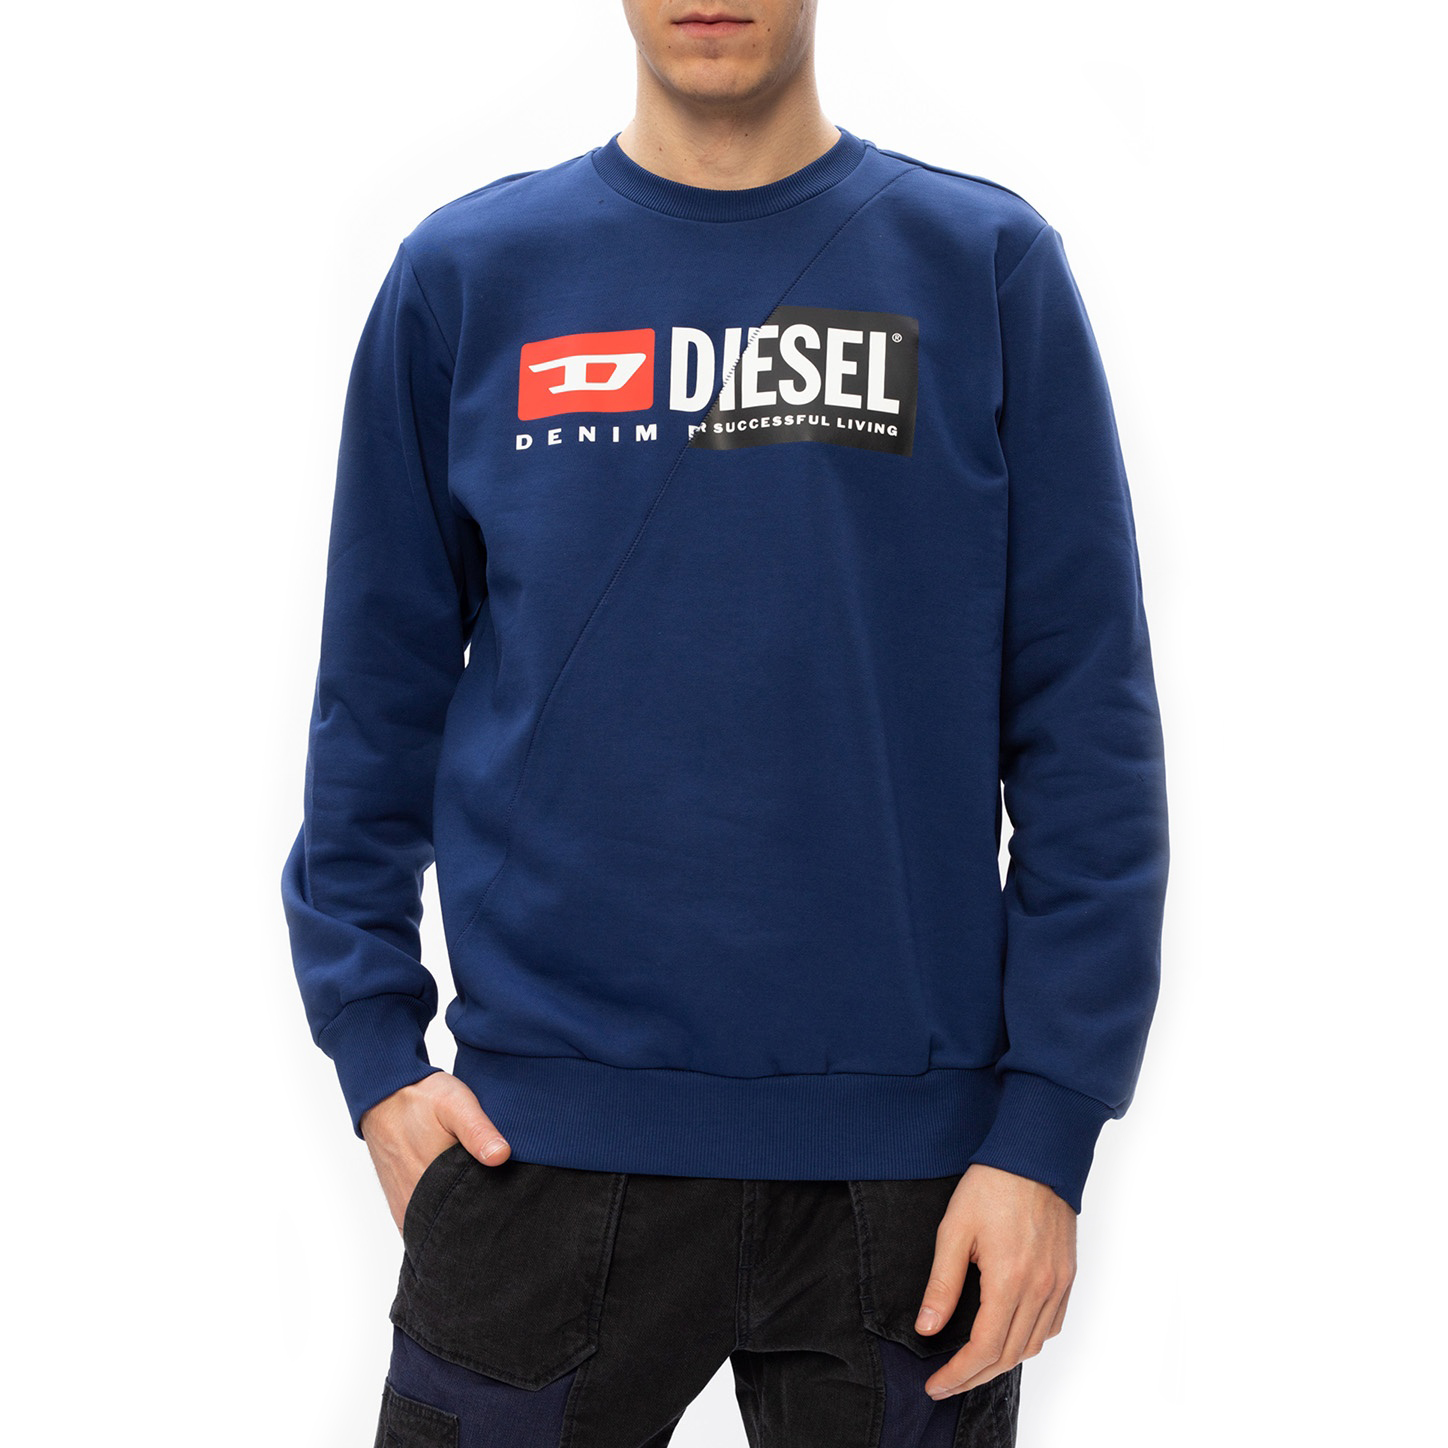 Diesel - Sweat-shirt homme